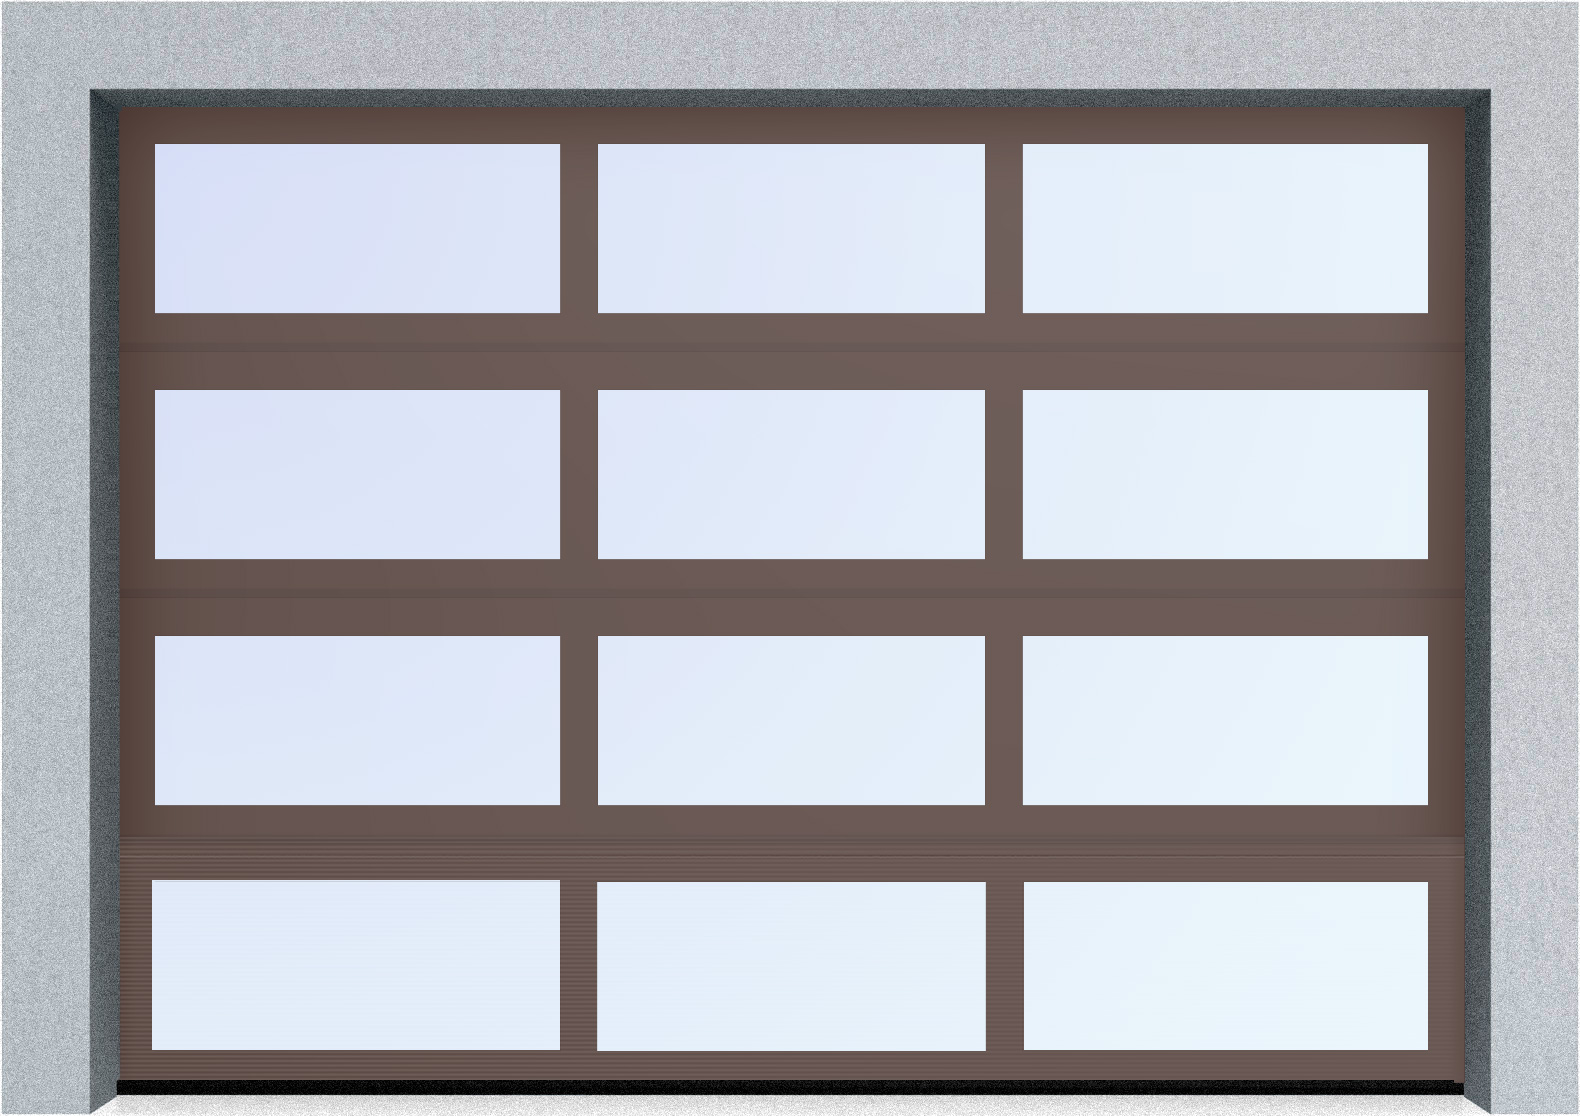  Секционные панорамные ворота серии AluTrend (АЛП) 5000х4500 нижняя панель стандартные цвета, фото 7 